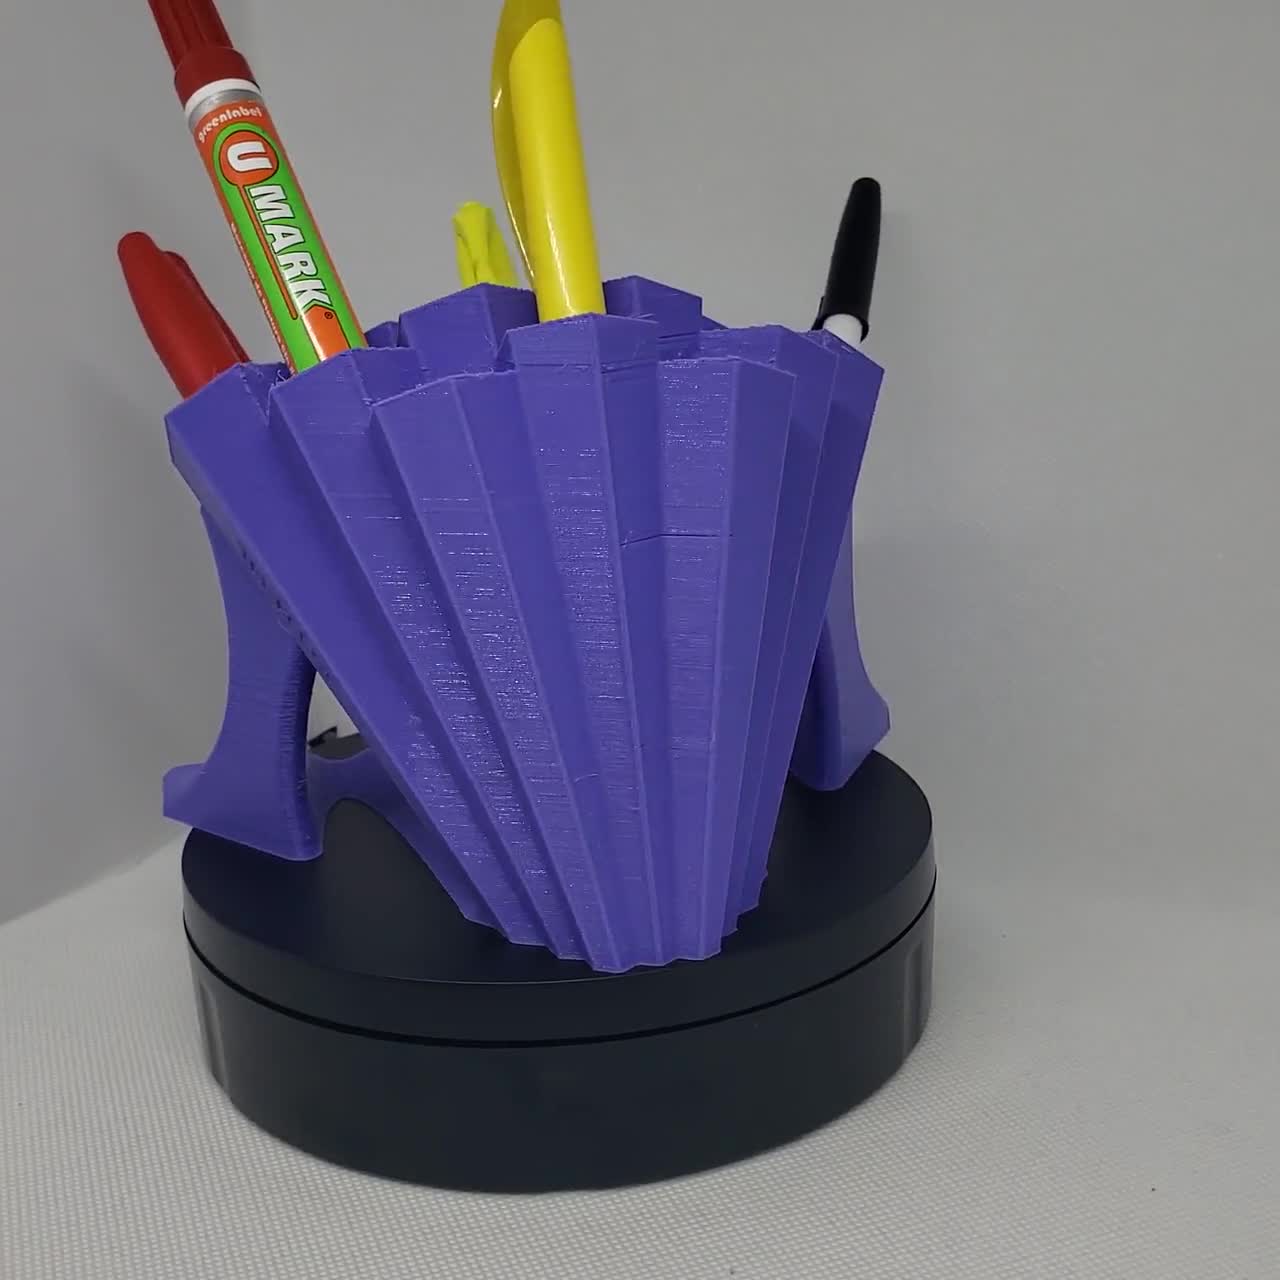 Tall Honeycomb Pen / Pencil Holder Sculpture Desktop Organizer 3D Printed